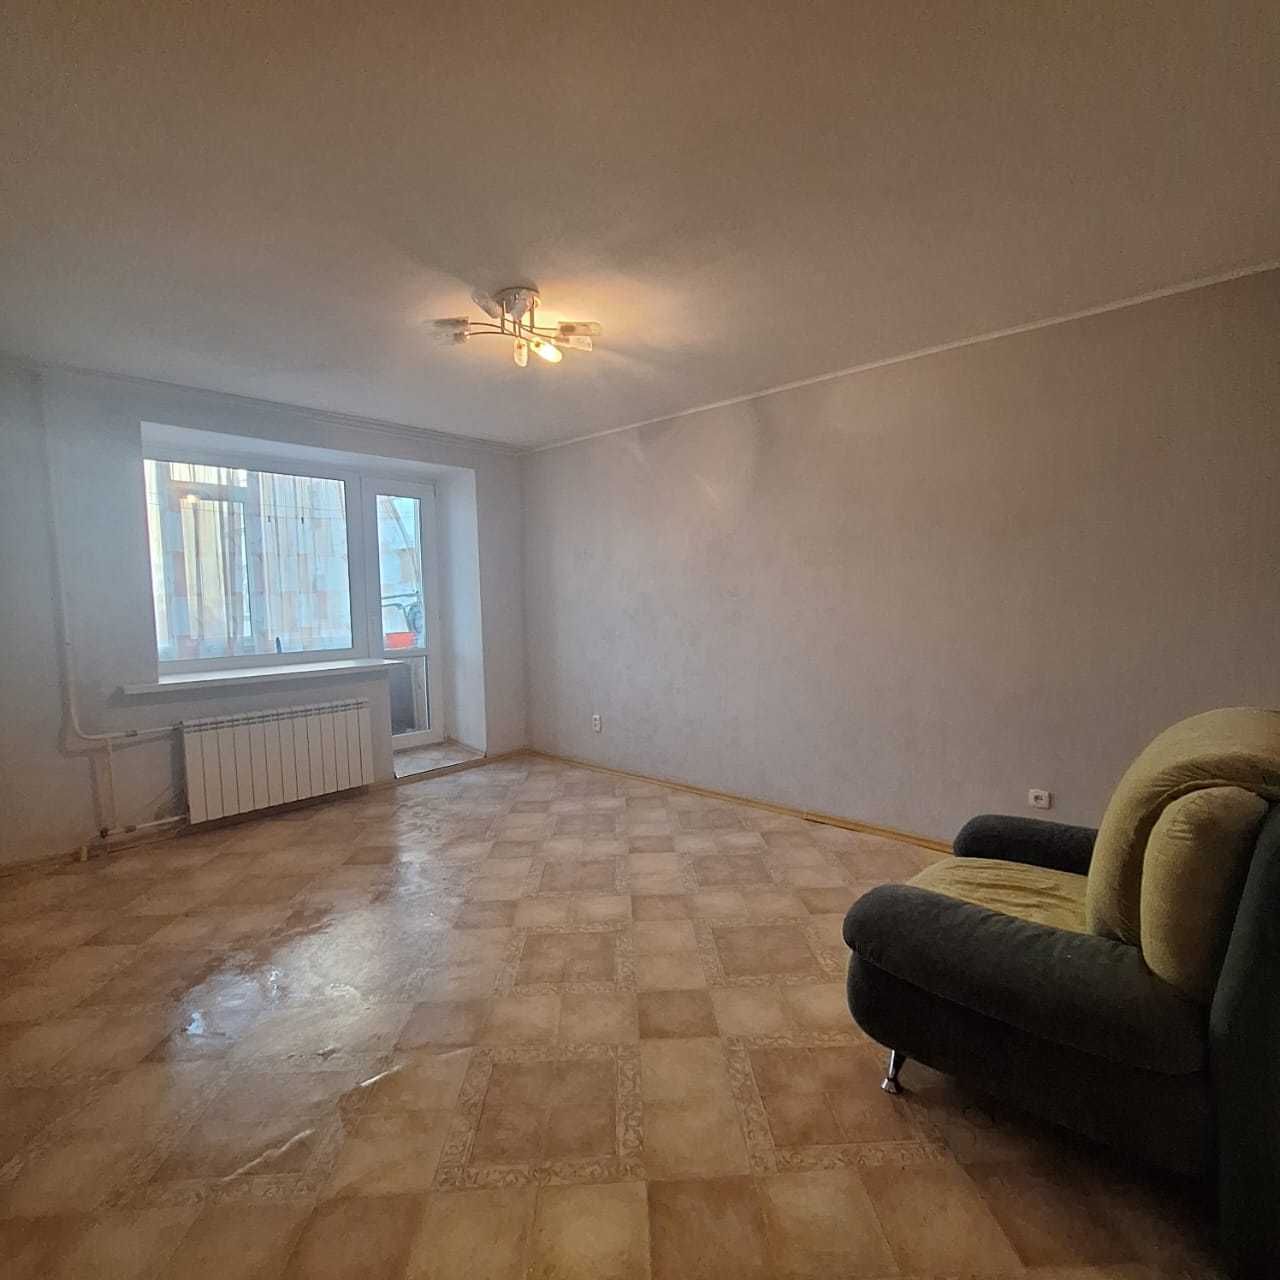 Продам 3-х комнатную квартиру в центре города Баймагамбетова 179